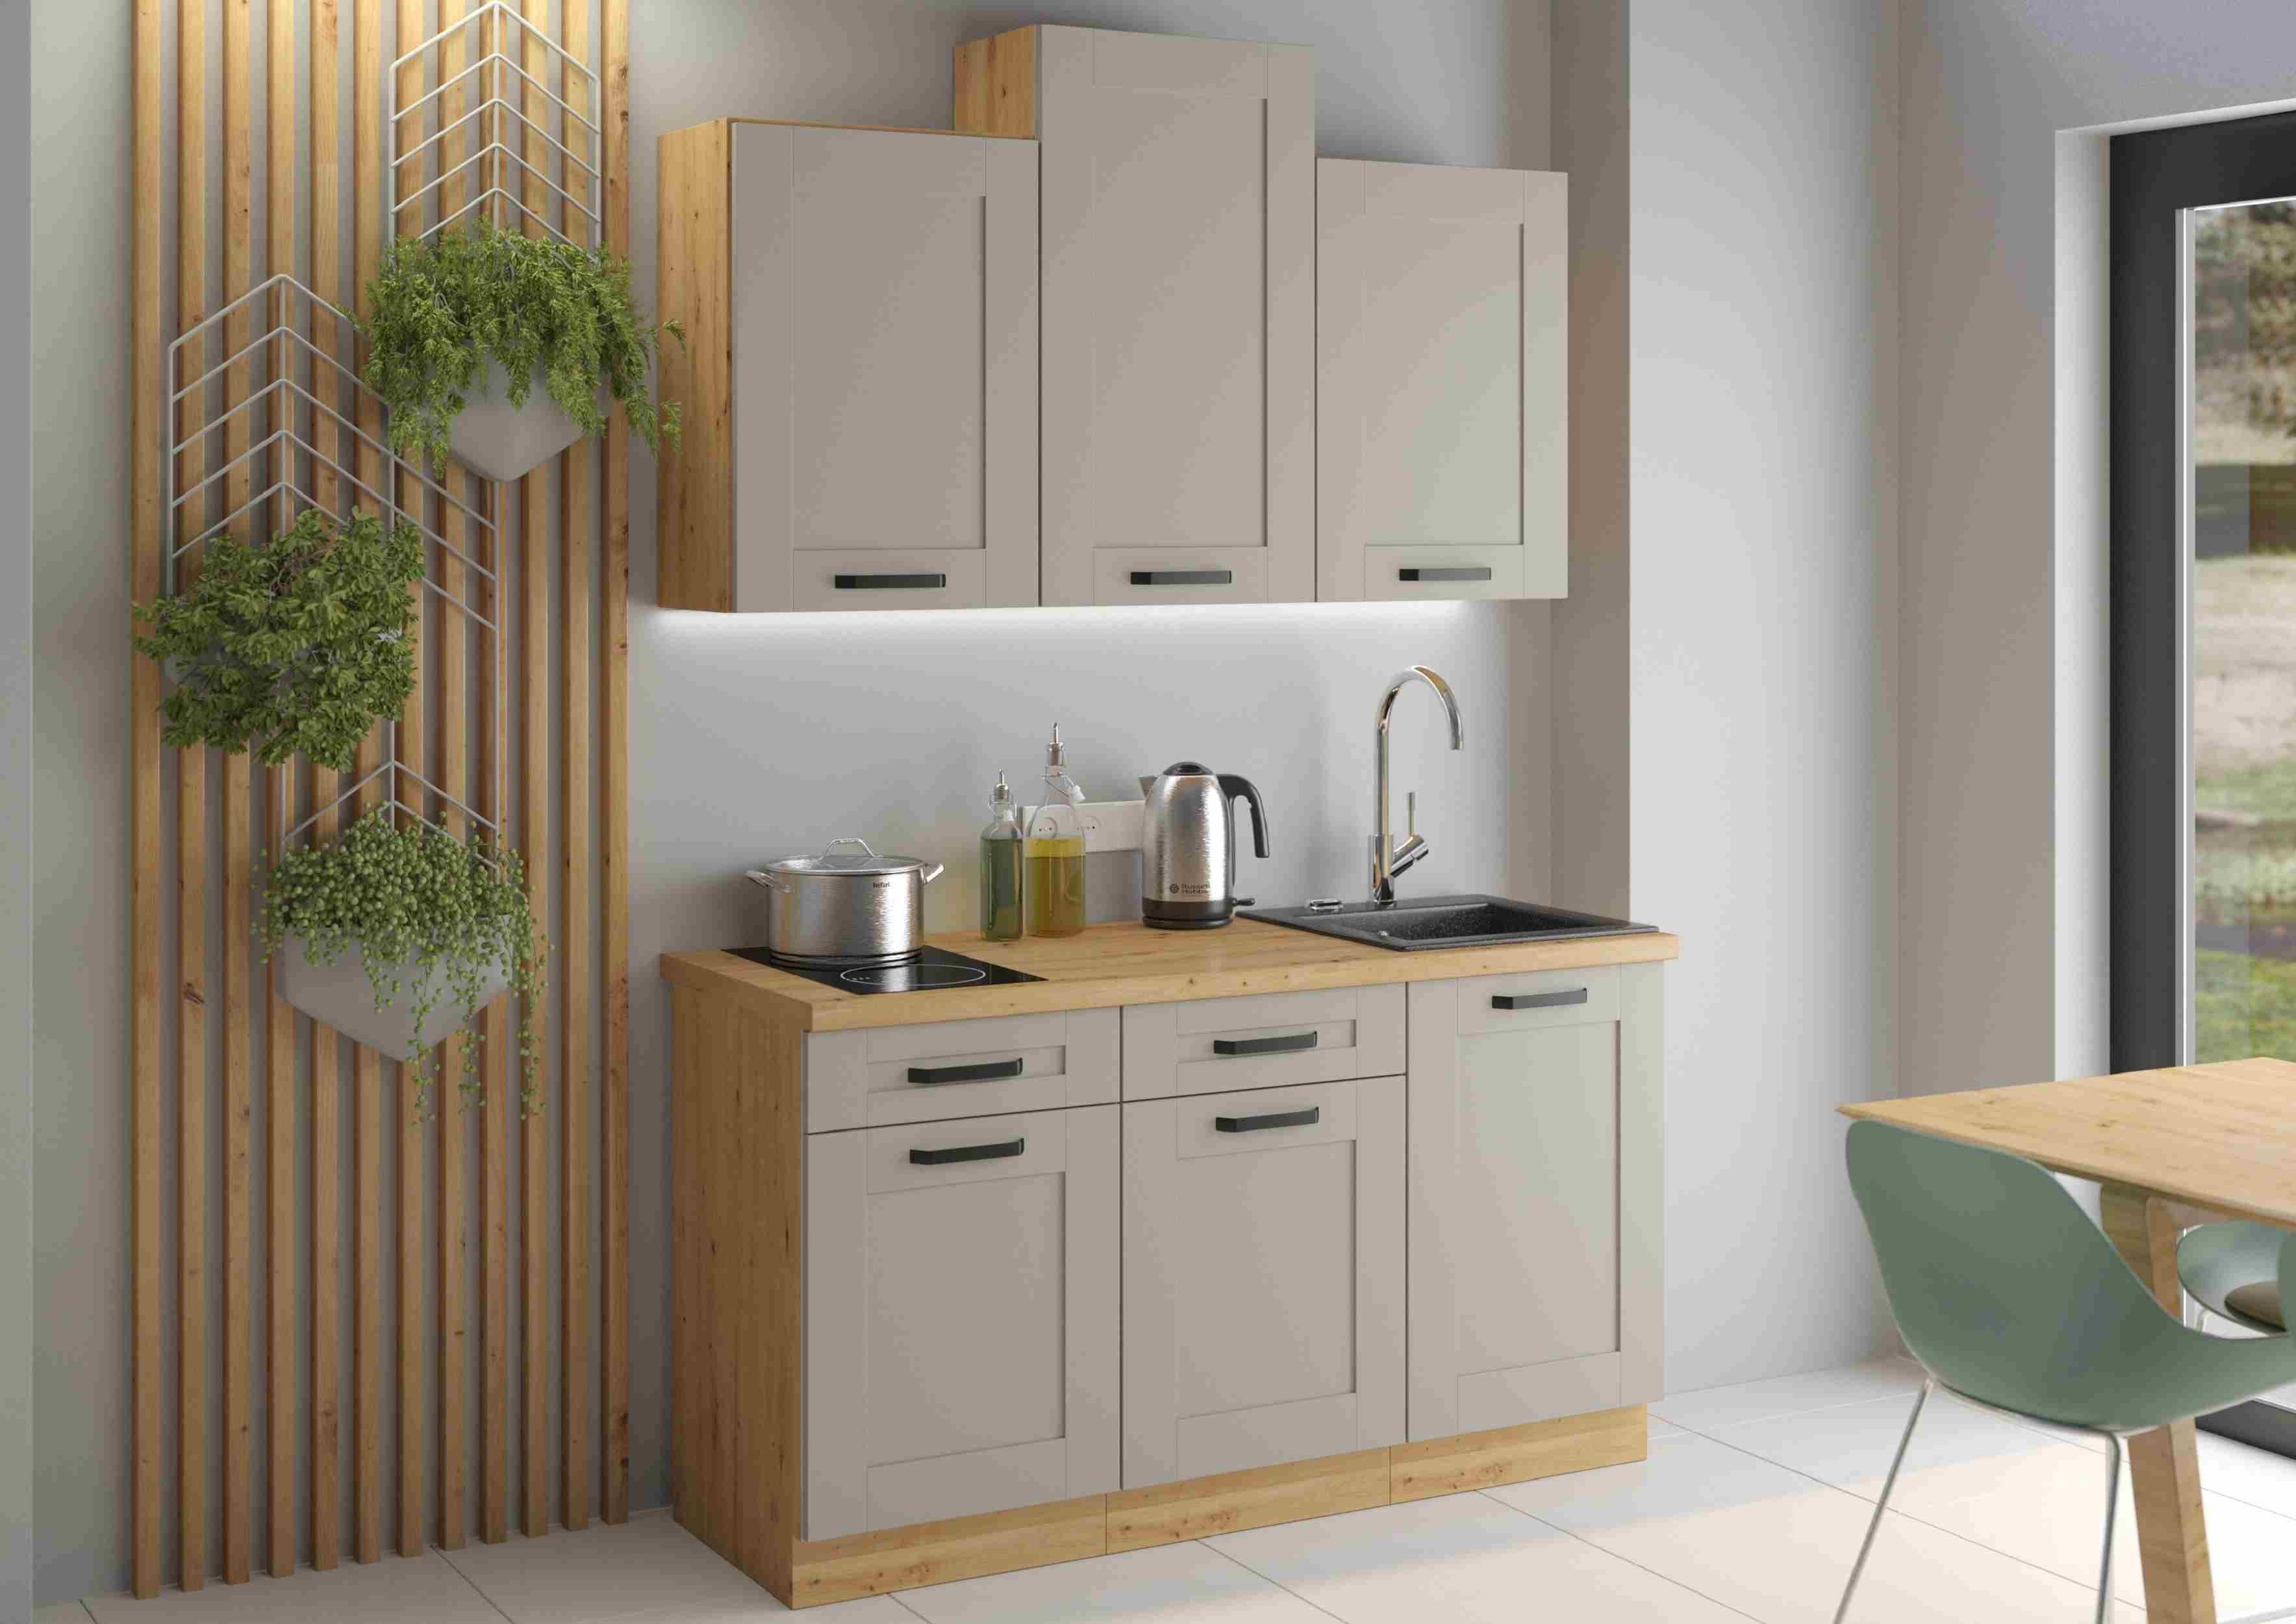 Furnix Küchenzeile Isladora 150 cm Küchenmöbel-Set mit Hängeschränken in 5 Farben, Maße 150x85,8x60 cm, Landhaus Design & Funktionalität